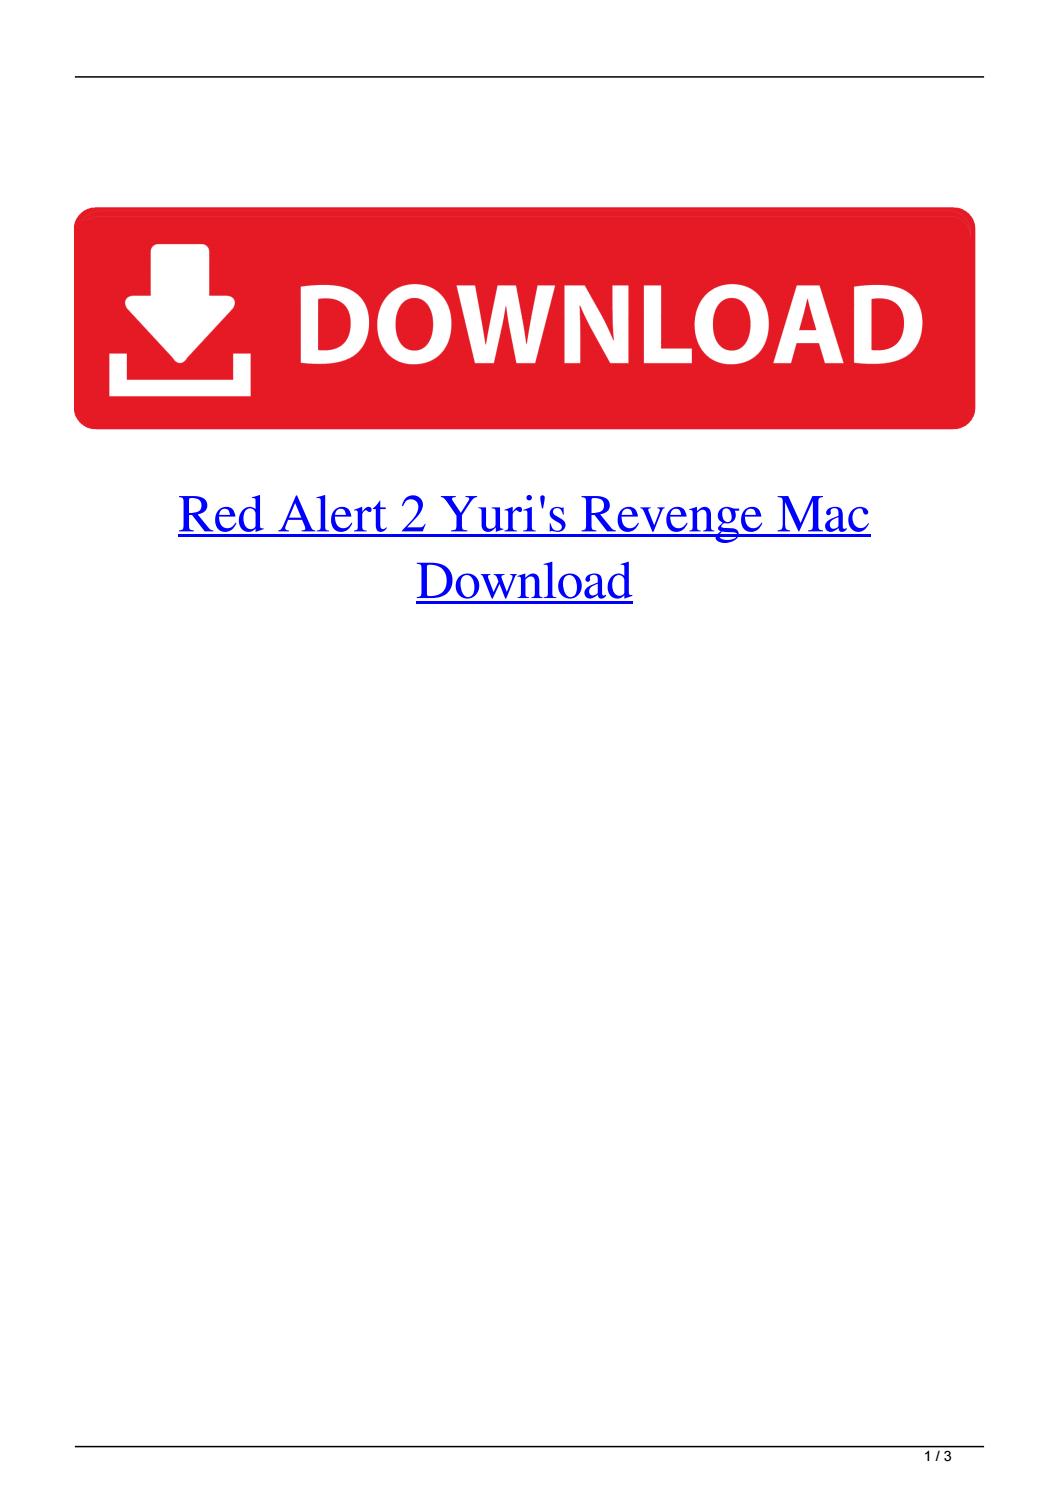 red alert 1 download full version crack